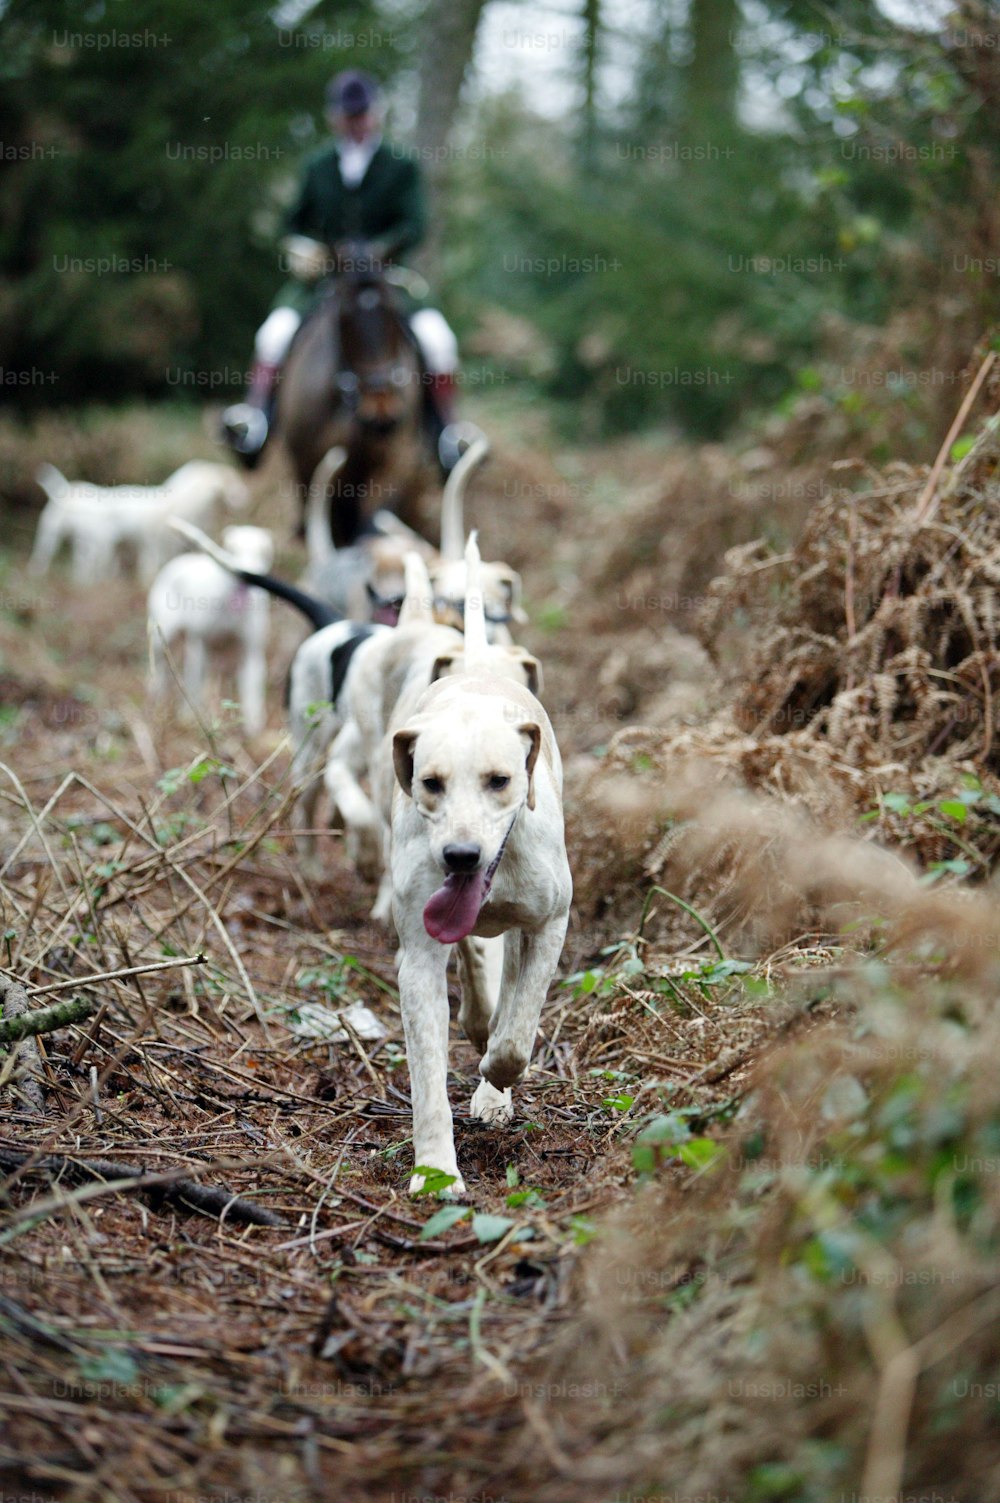 グロスターシャー、イングランド - 12月26日:ボクシングデー、2003年12月26日、グロスターシャー、イングランドで伝統的なキツネと猟犬の狩りの間に猟犬はキツネを検索します。雨にも関わらず、多くの田舎の支持者が狩猟を支持し、イングランドの田舎では物議を醸す伝統となった。狩猟の将来を決める法案が現在、英国議会で審議中です。